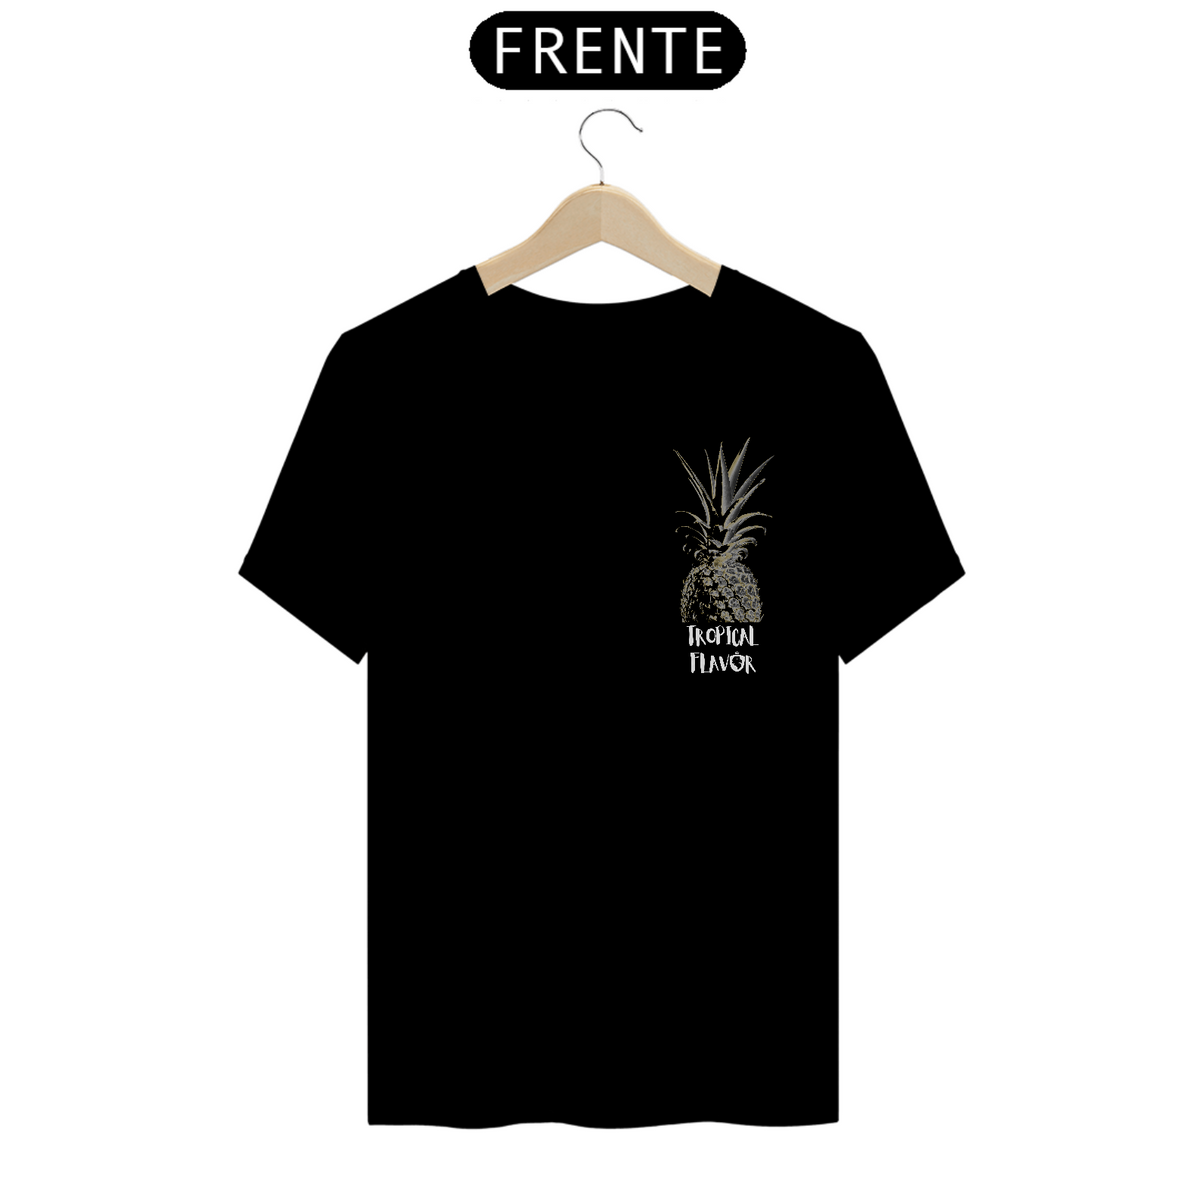 Nome do produto: T-Shirt Prime Tropical Flavor